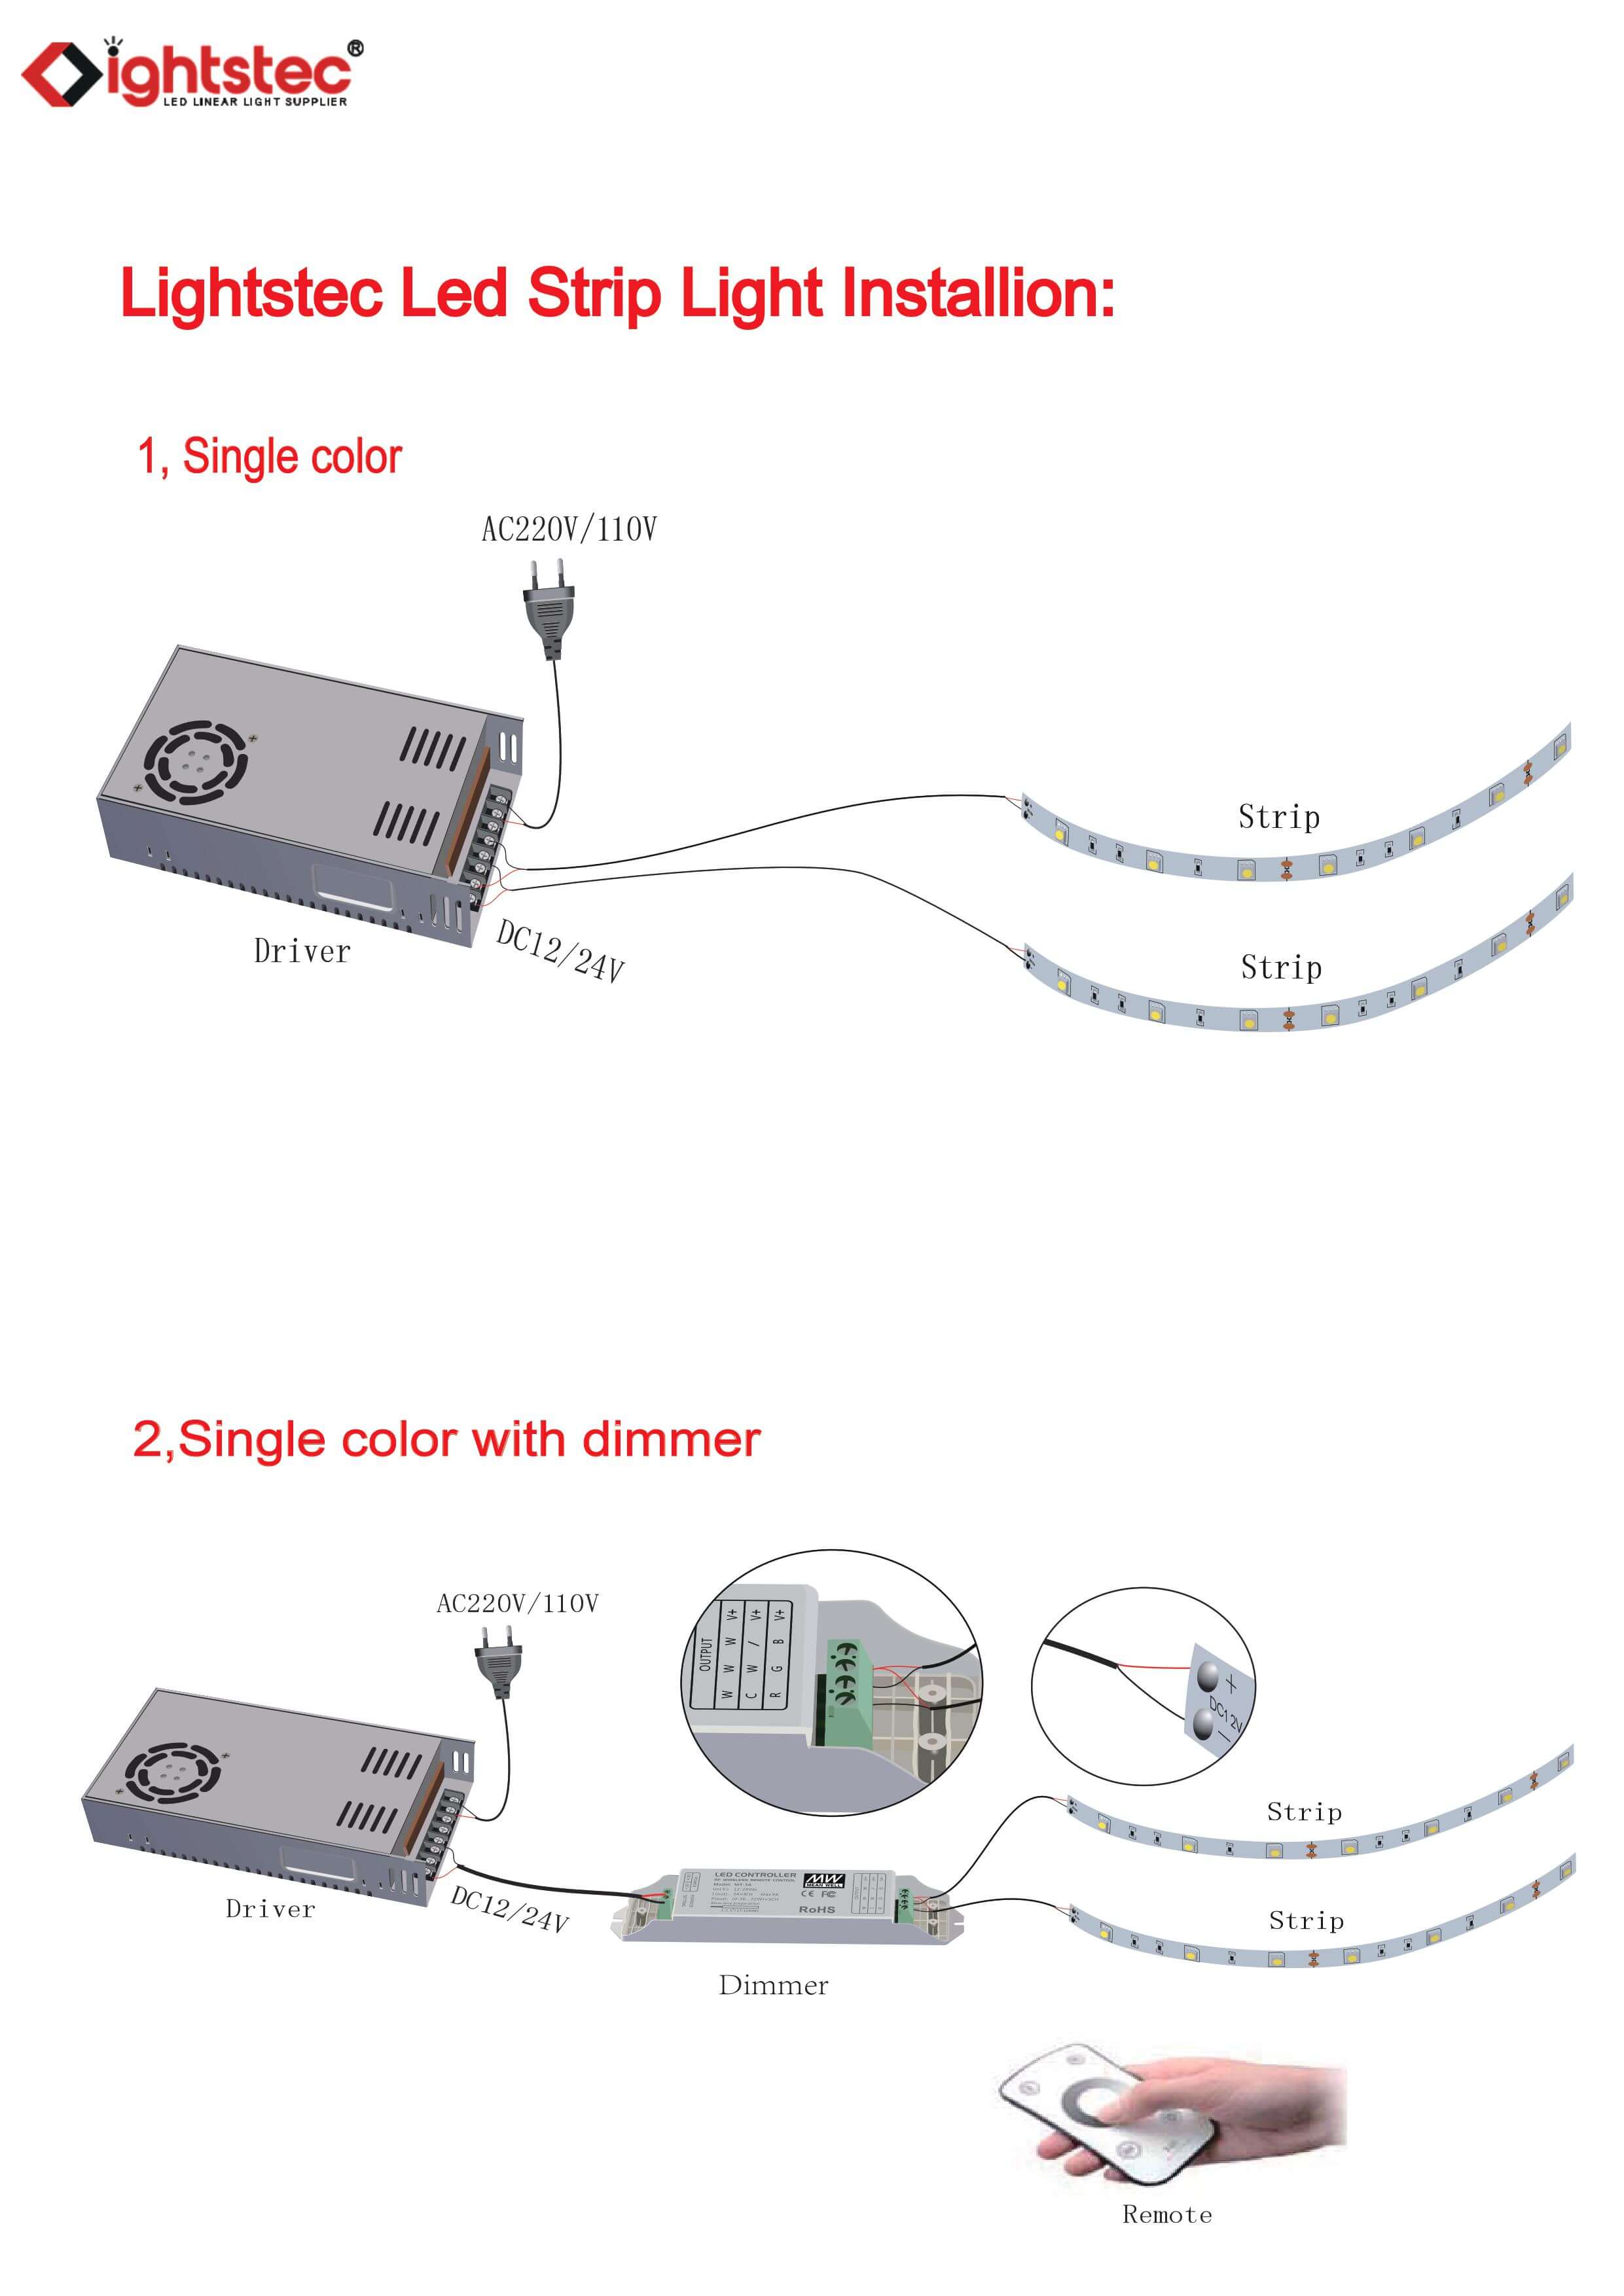 hur man ansluter ledstripsljuset med led strömförsörjning